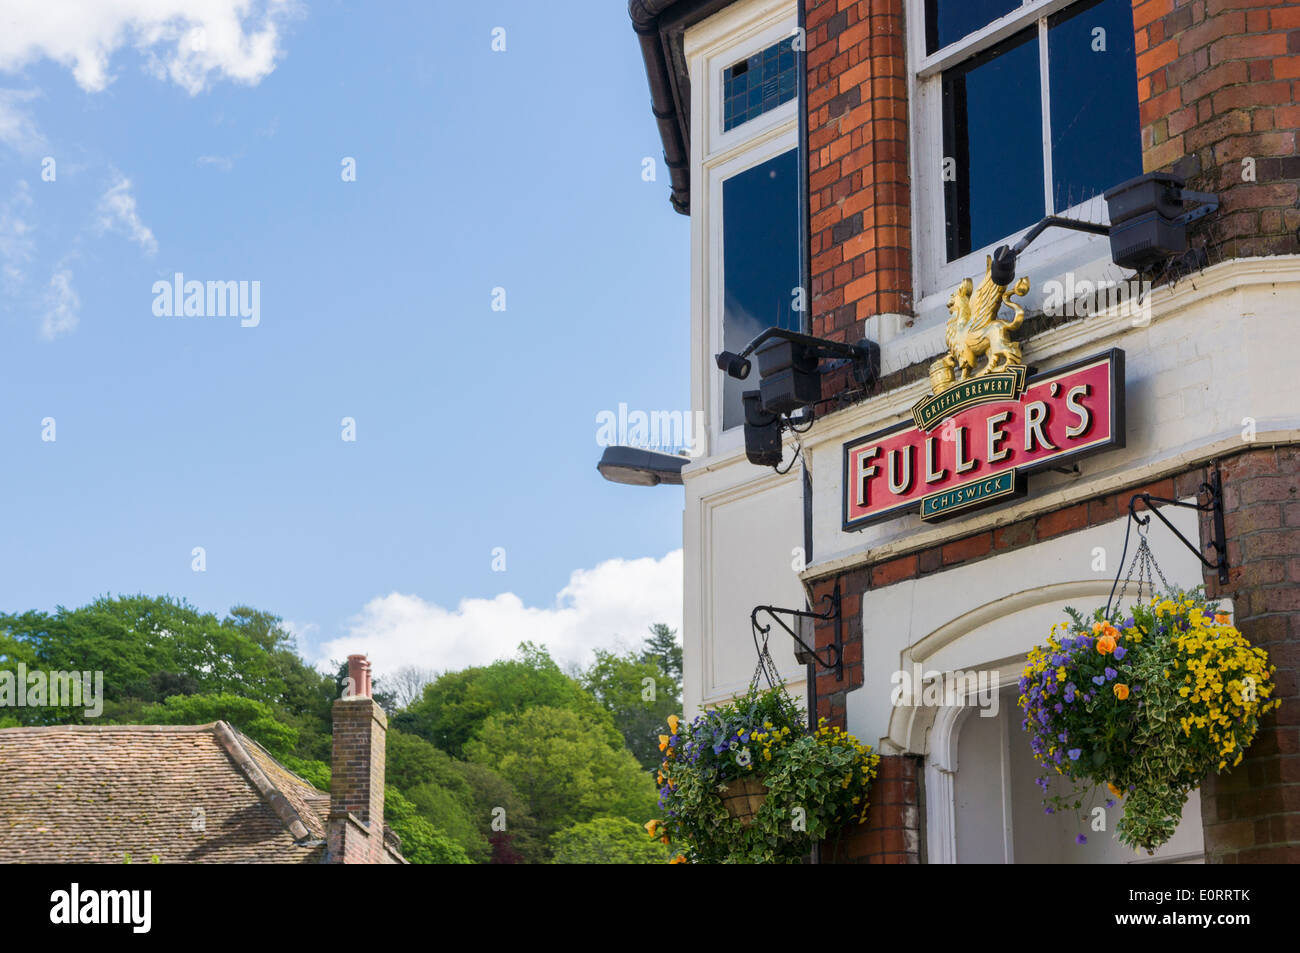 Cervecería Fullers logotipo en un pub, Inglaterra, Reino Unido. Foto de stock